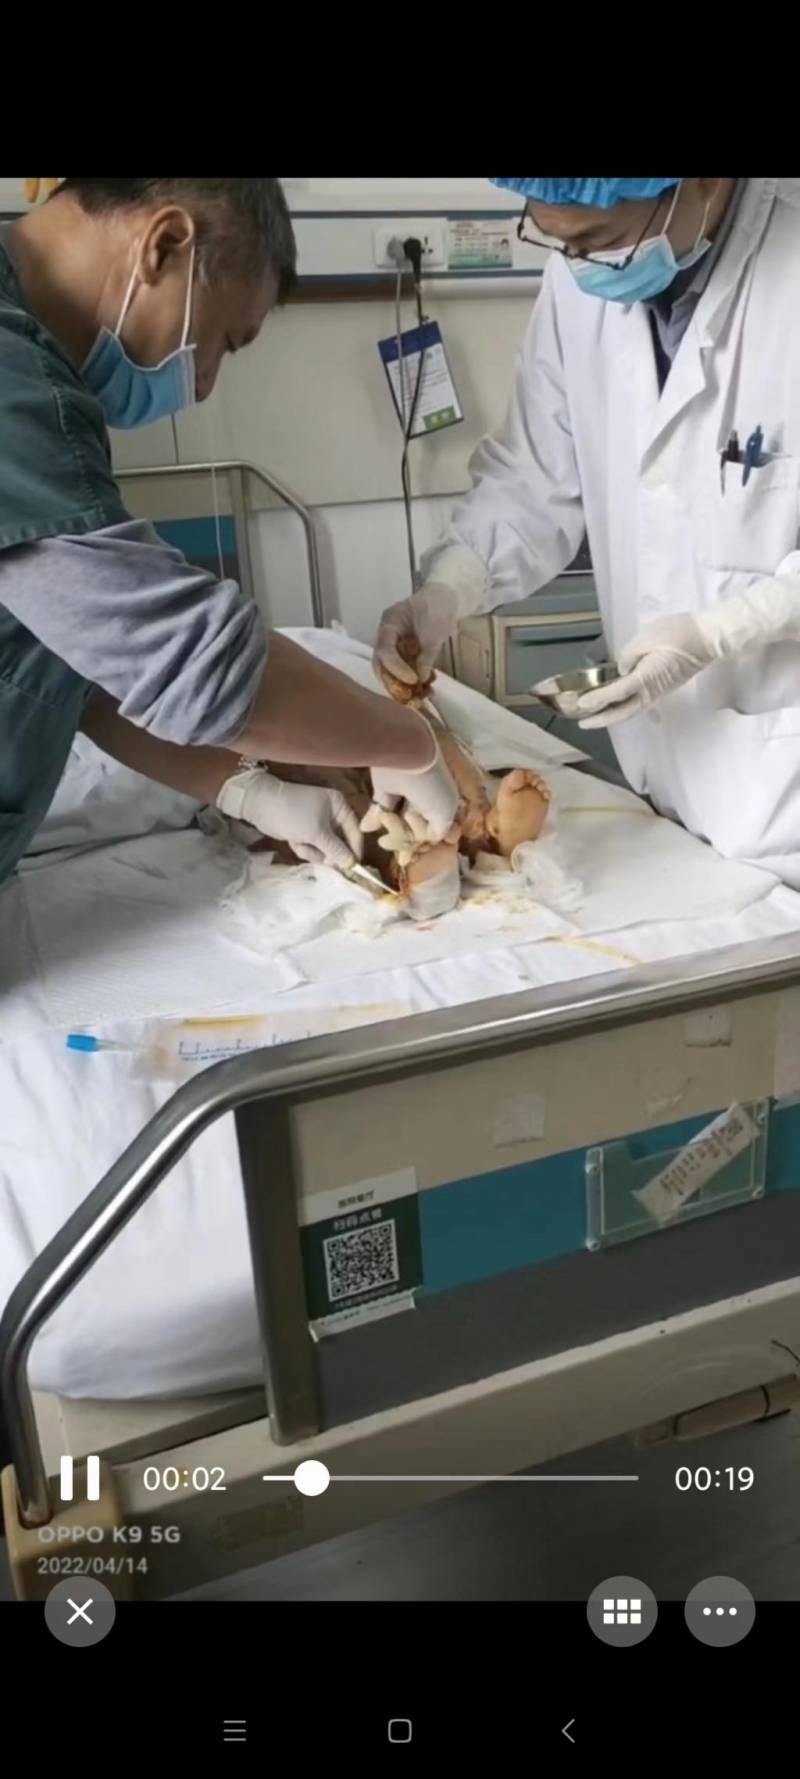 3D医学动画演示烧伤皮肤移植植皮手术全过程